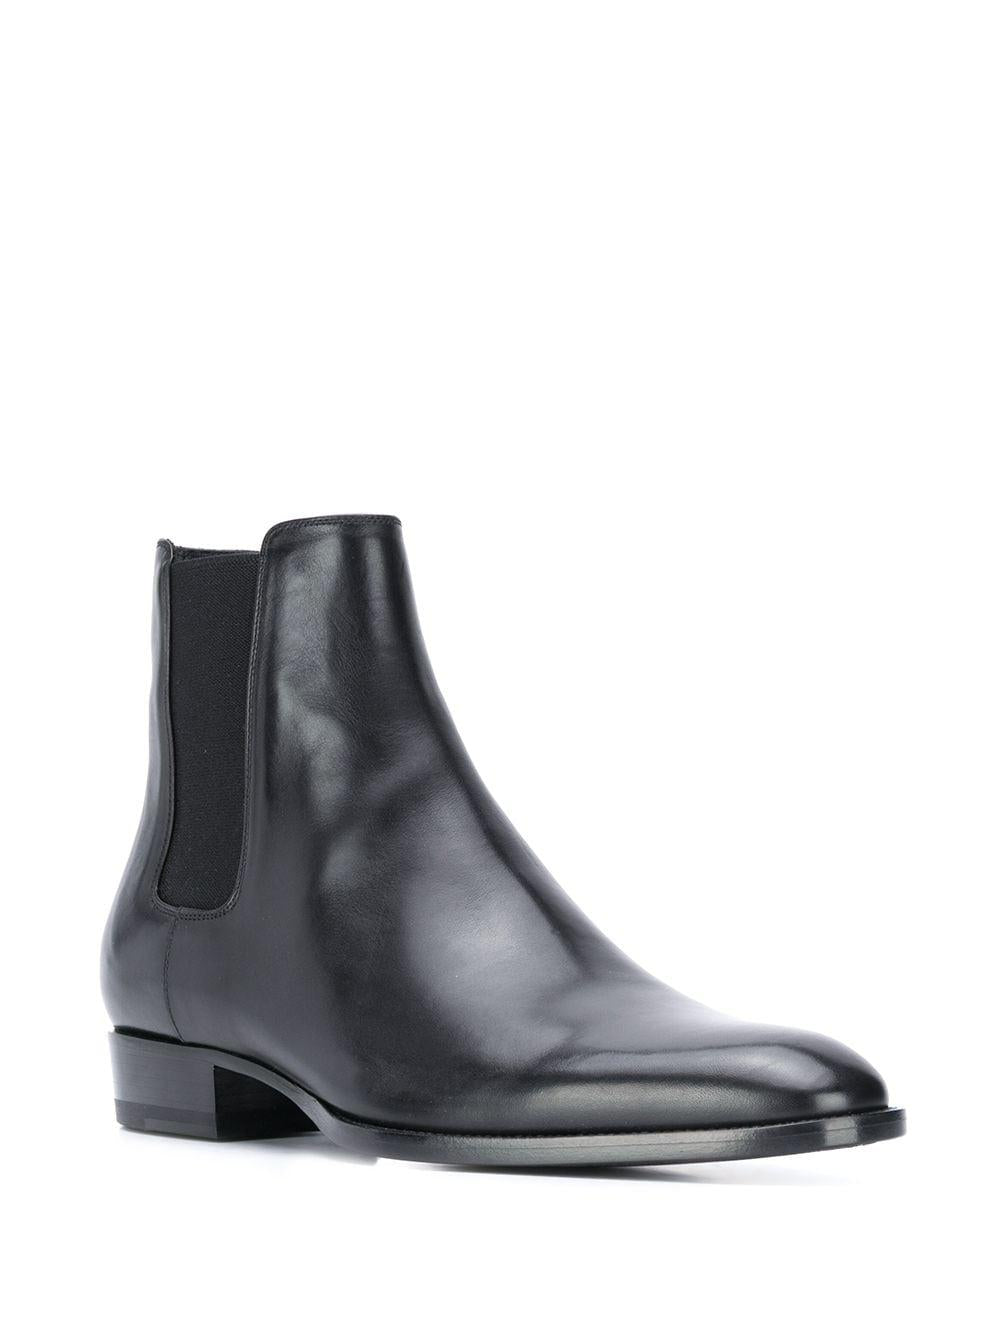 SAINT LAURENT Black Leather Ankle Boots for Men